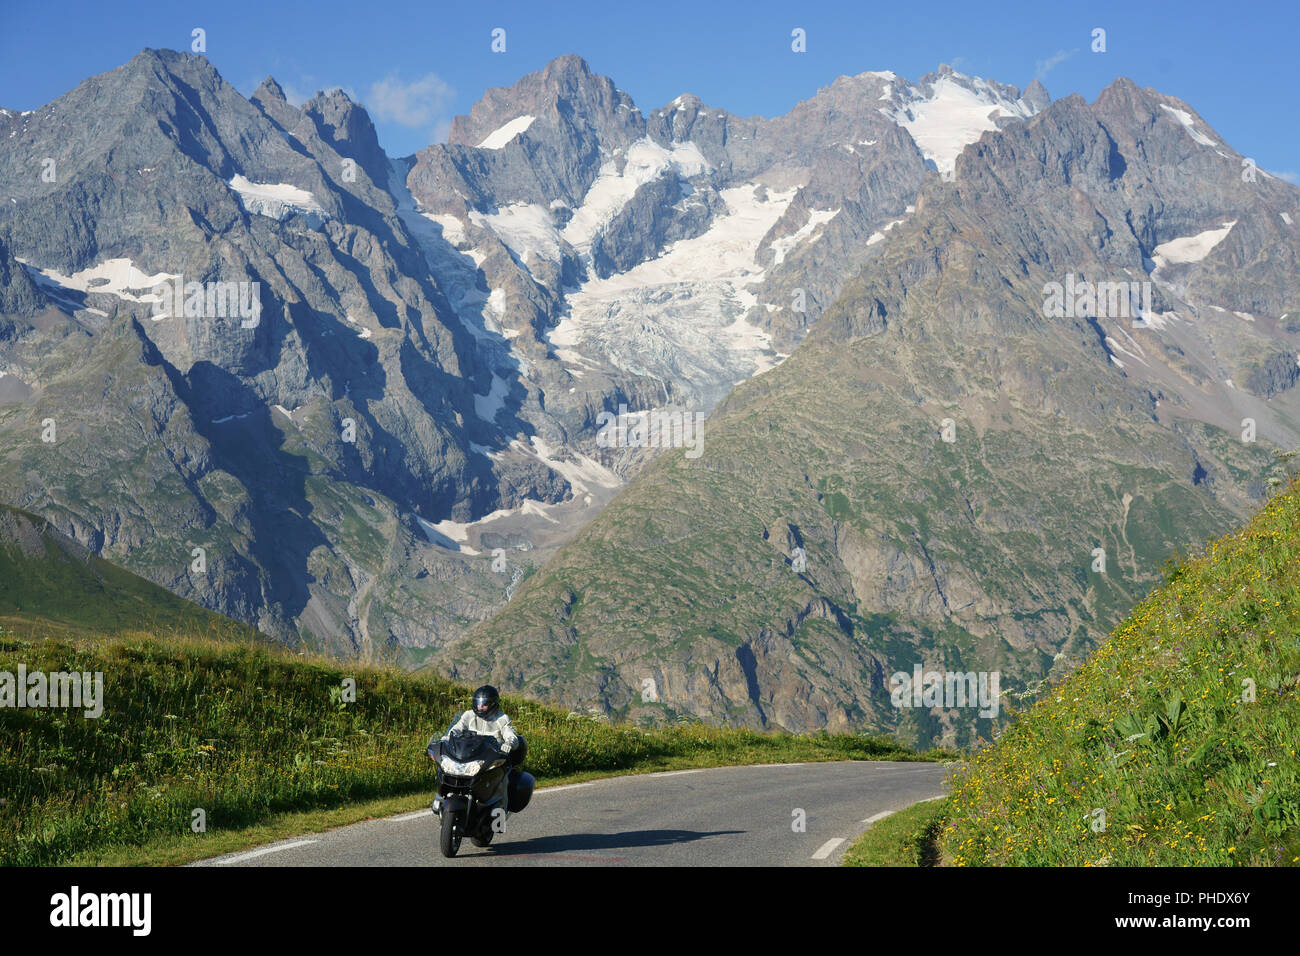 Motociclista in crociera con le alte cime e ghiacciai del Massiccio degli Ecrins sullo sfondo. Tra col du Lautaret e col du Galibier, Francia. Foto Stock